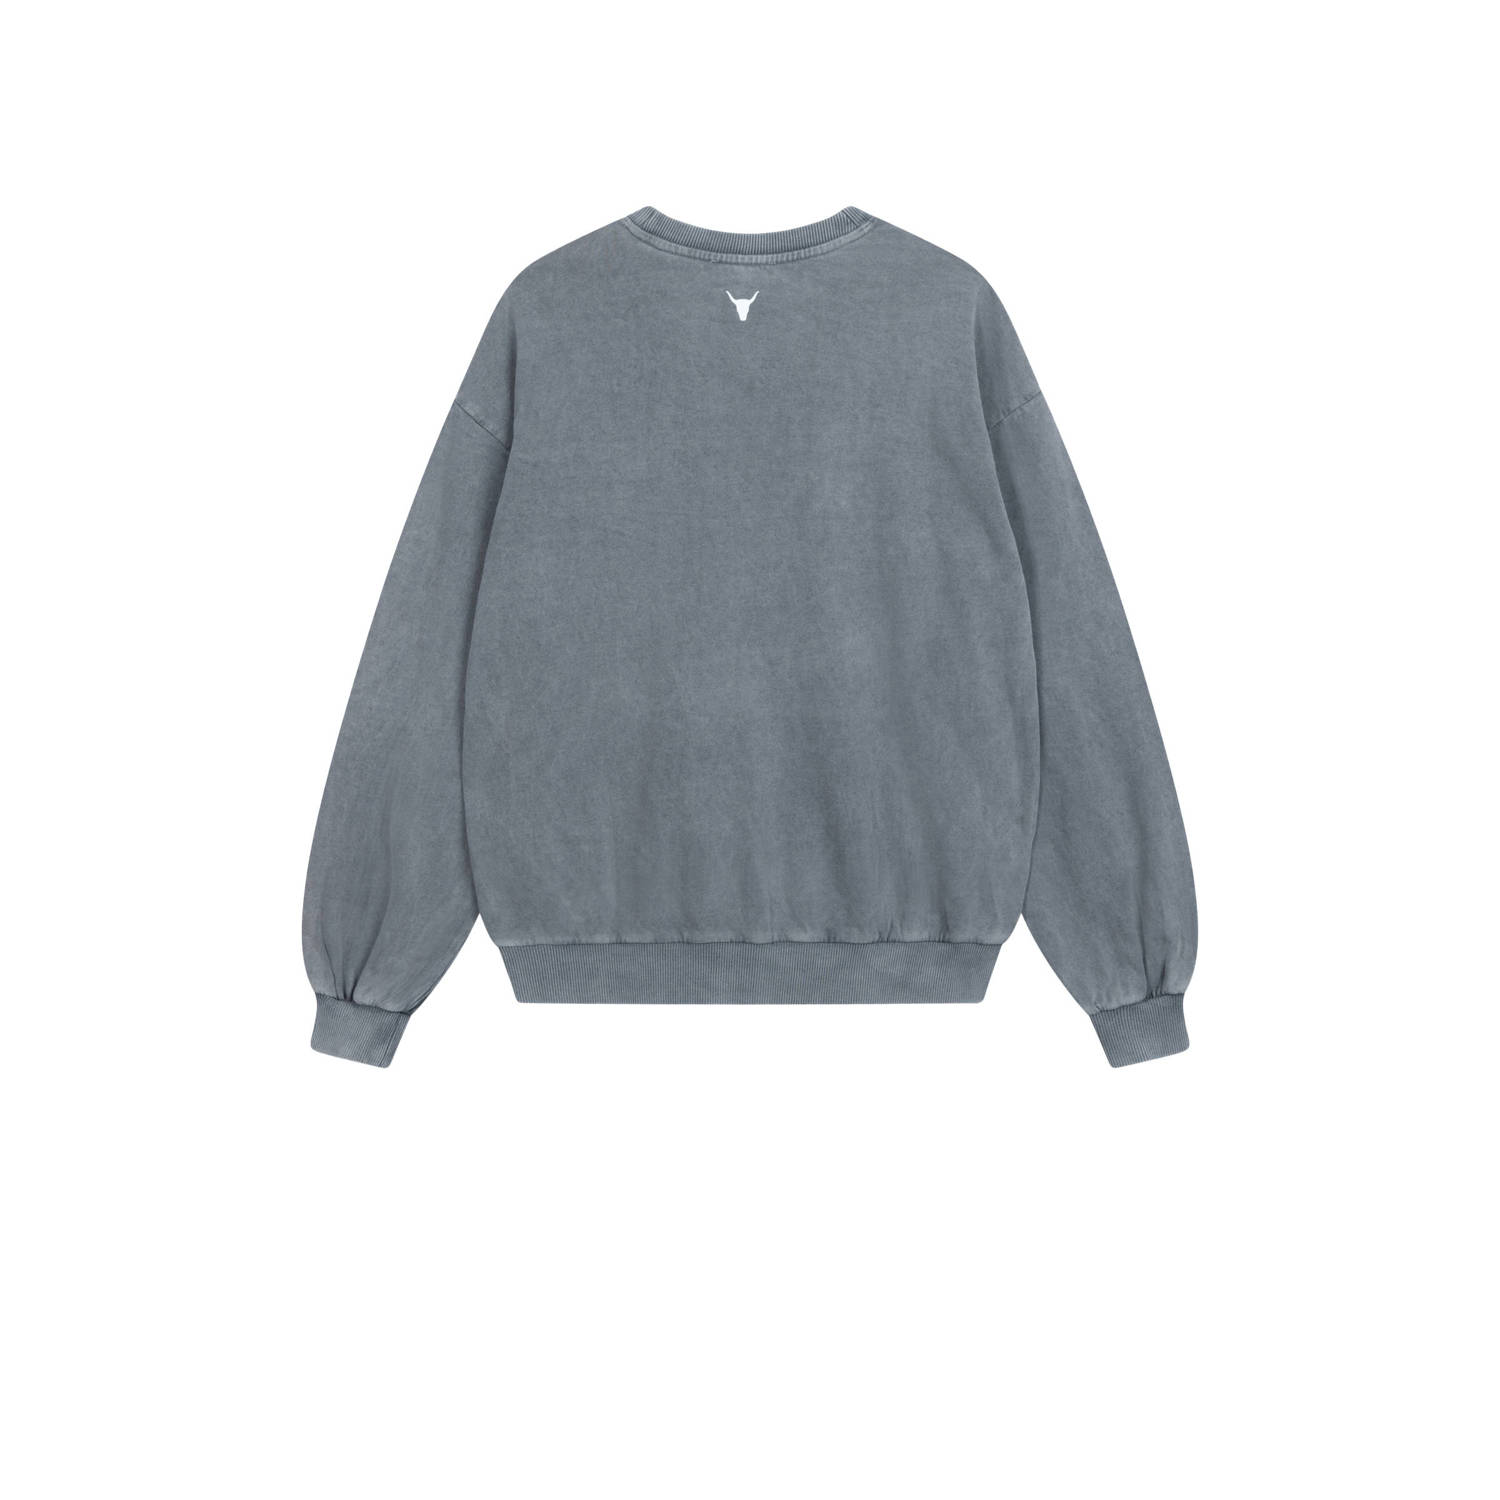 Alix the Label sweater met logo grijs